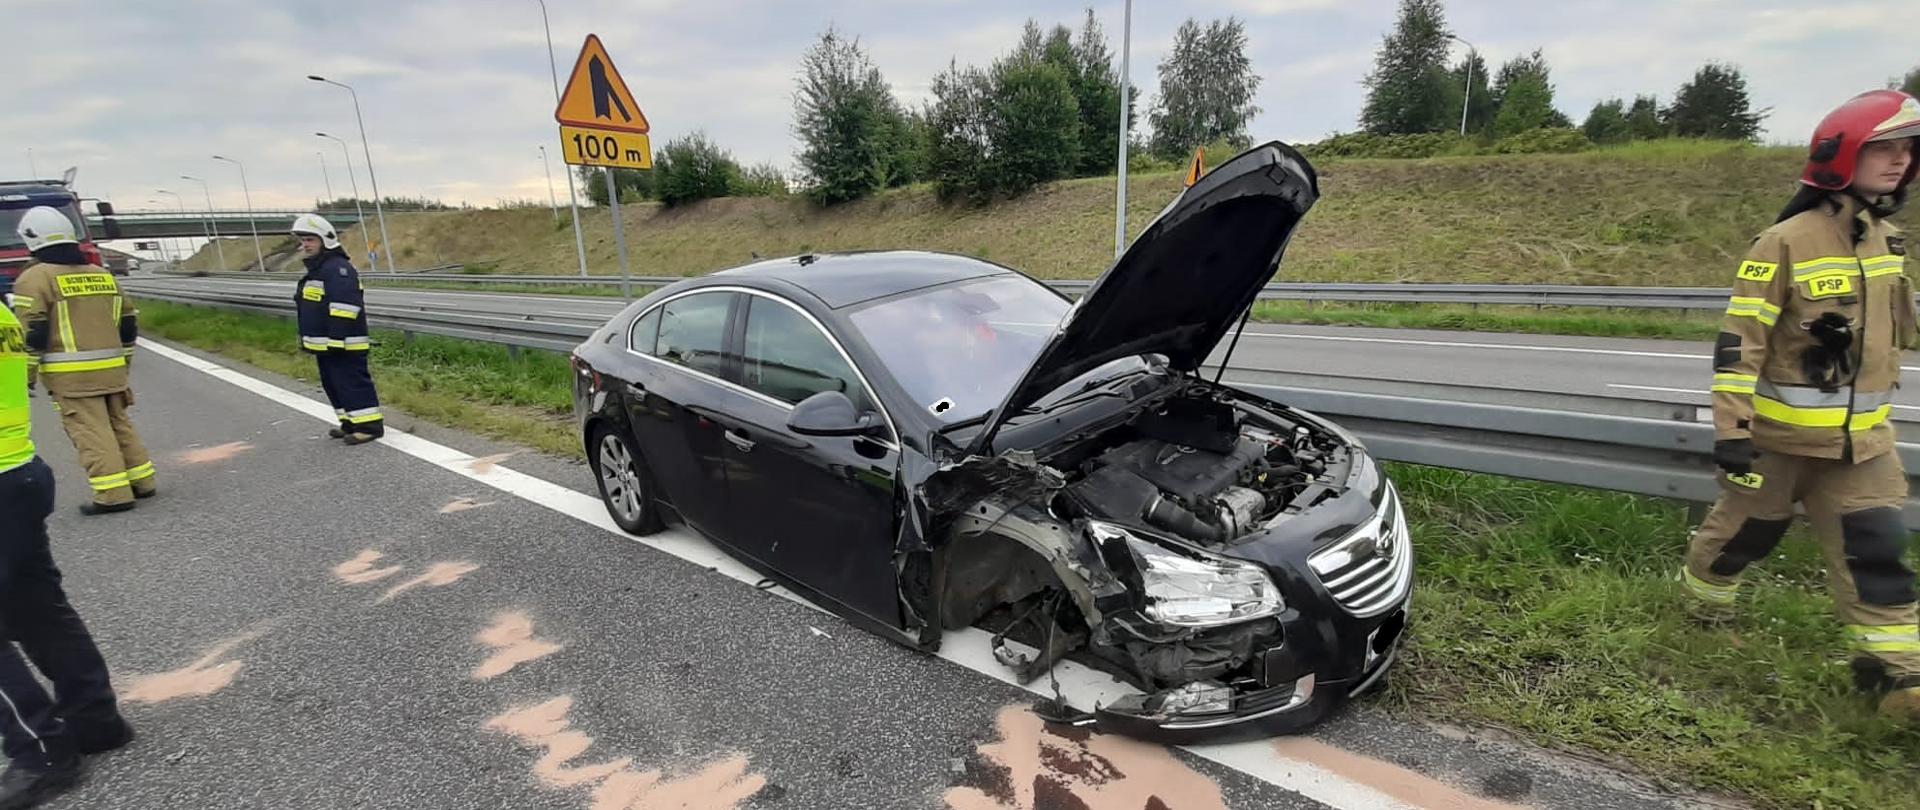 Zdjęcie obrazuje samochód osobowy Opel Insignia po kolizji drogowej. Od samochodu odpadło przednie prawe koło. Jezdnia natomiast jest posypana sorbentem , aby zneutralizować wycieki olejowe. Obok pojazdu przemieszczają się strażacy PSP i OSP. Stoi też policjant. W tle widać infrastrukturę drogową.